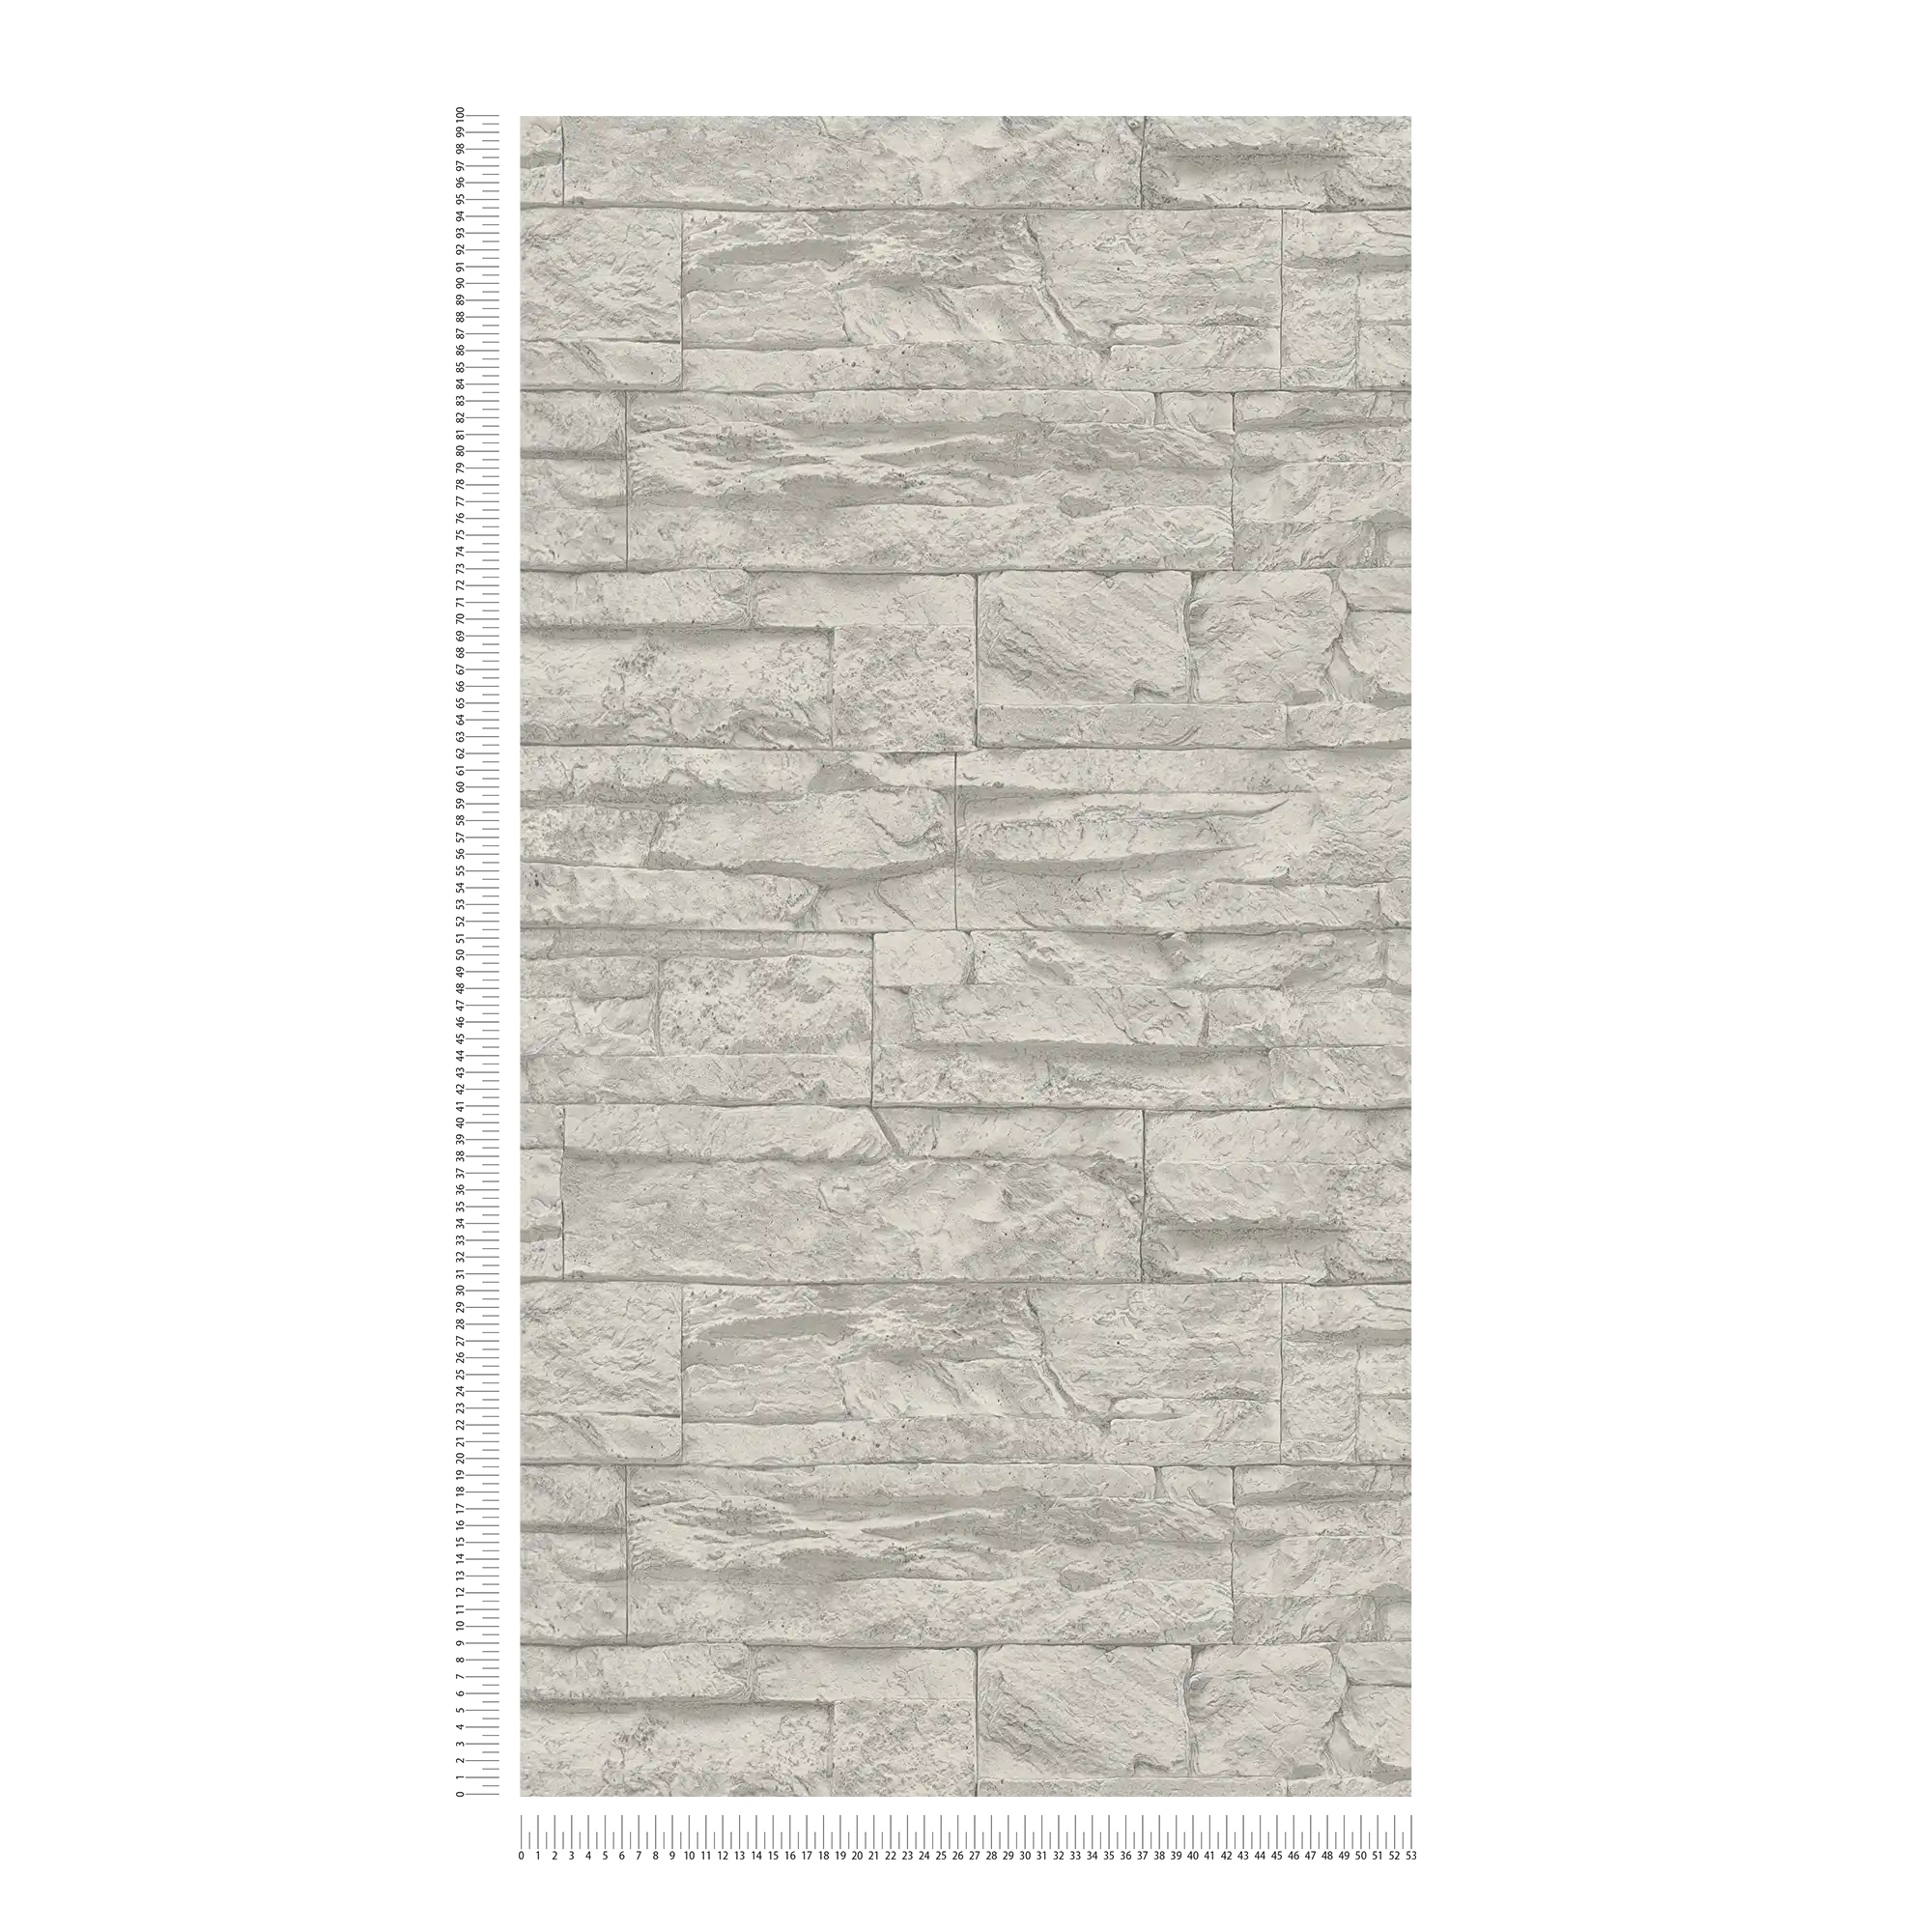             behang natuursteen look gedetailleerd & realistisch - grijs, wit
        